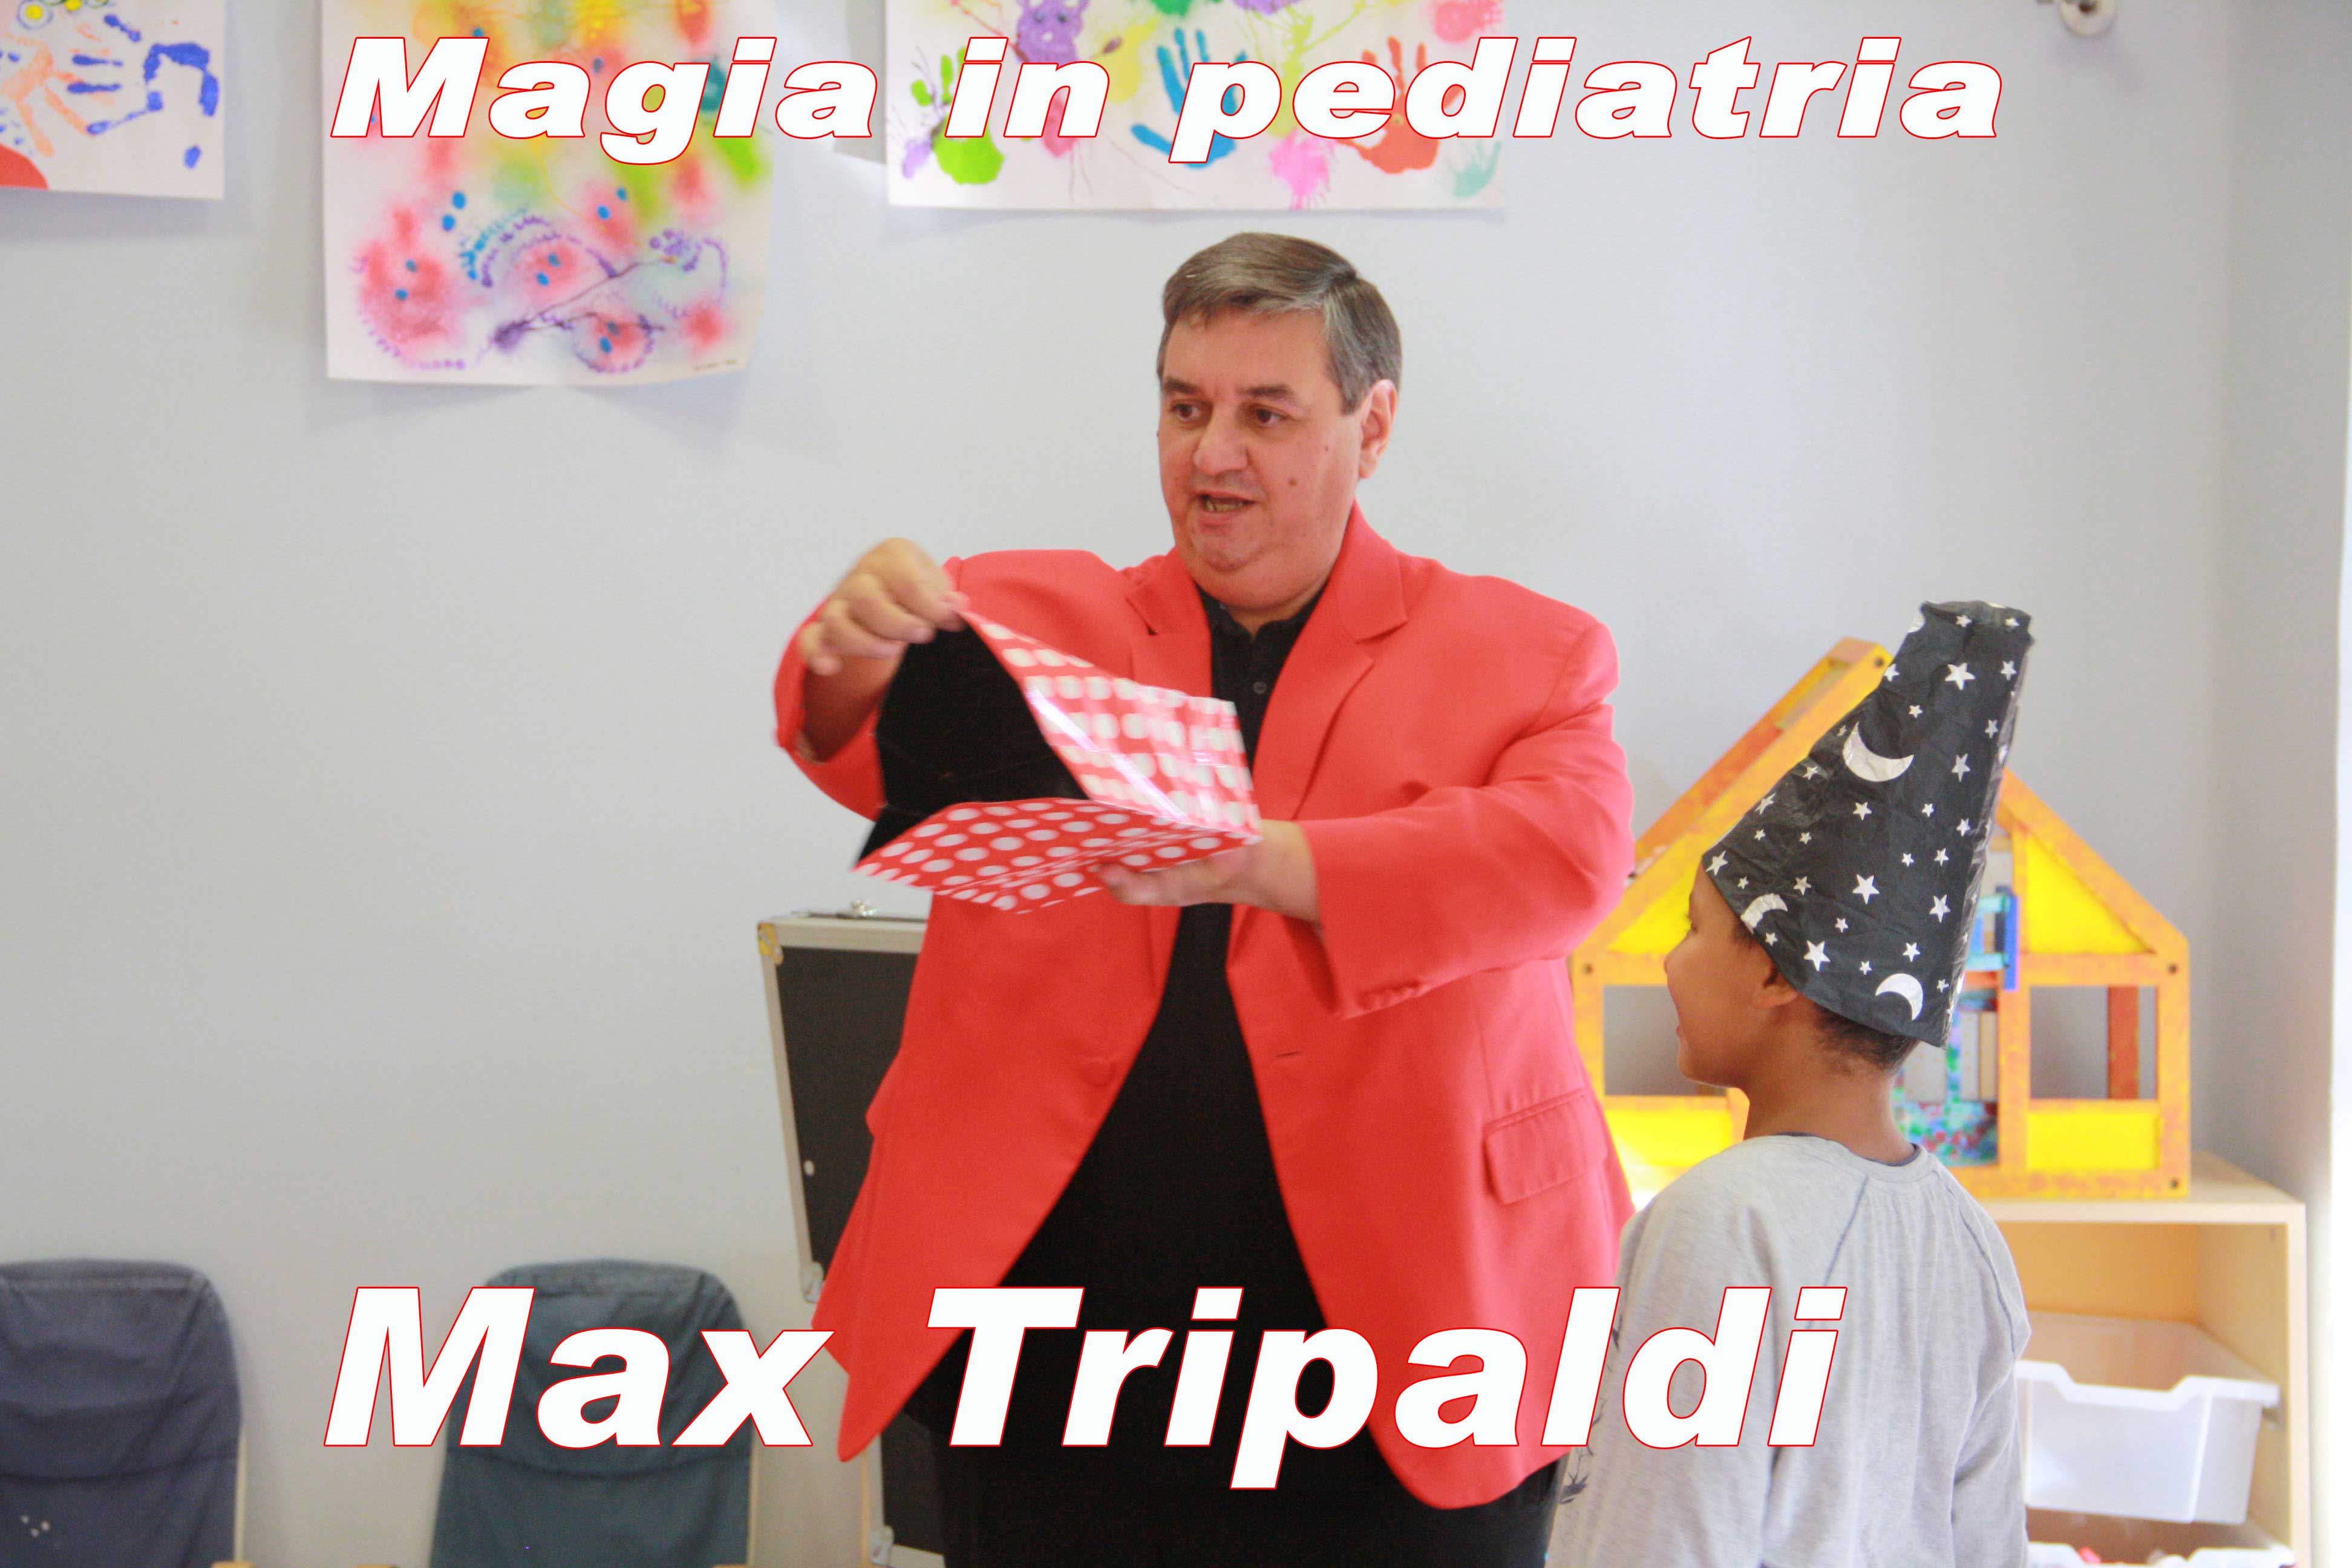 Mago-Max-Tripaldi